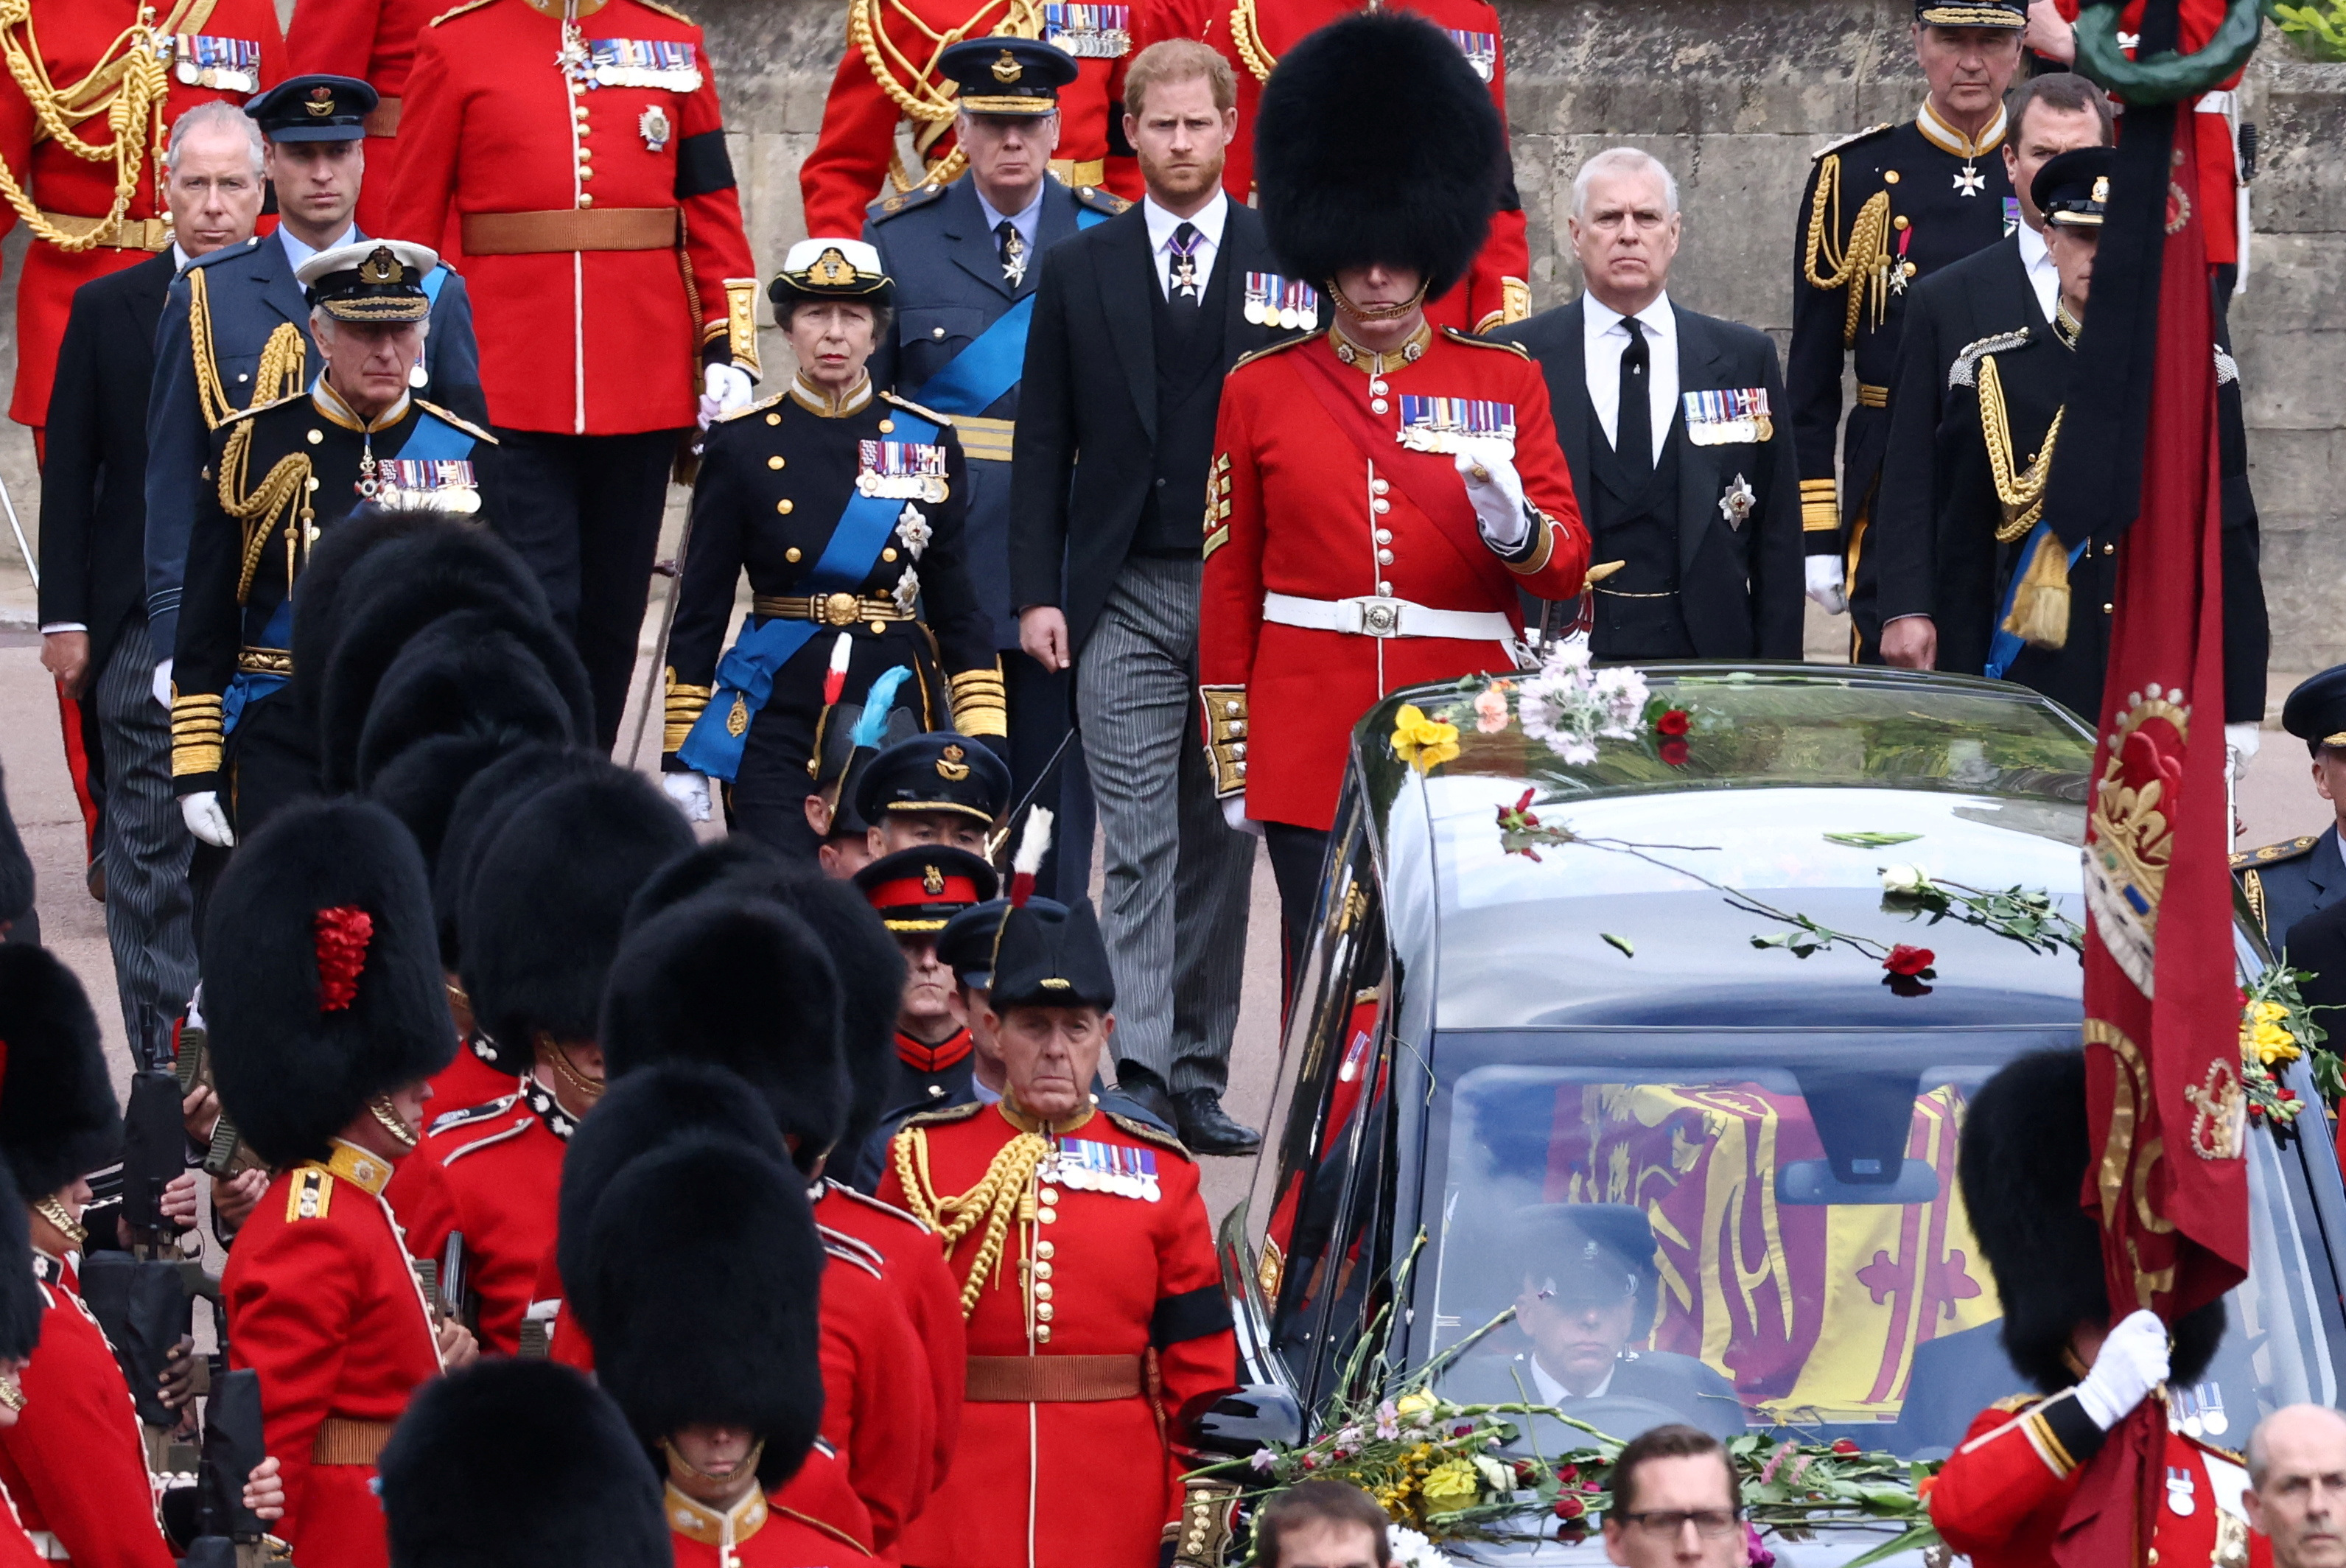 El rey Carlos de Gran Bretaña, la princesa Ana de Gran Bretaña, la princesa real, el príncipe Andrew, el duque de York, el príncipe Edward, el conde de Wessex, el príncipe Guillermo de Gran Bretaña, el príncipe de Gales y el príncipe Harry de Gran Bretaña, duque de Sussex, caminan tras el auto que lleva los restos de la reina Isabel II.